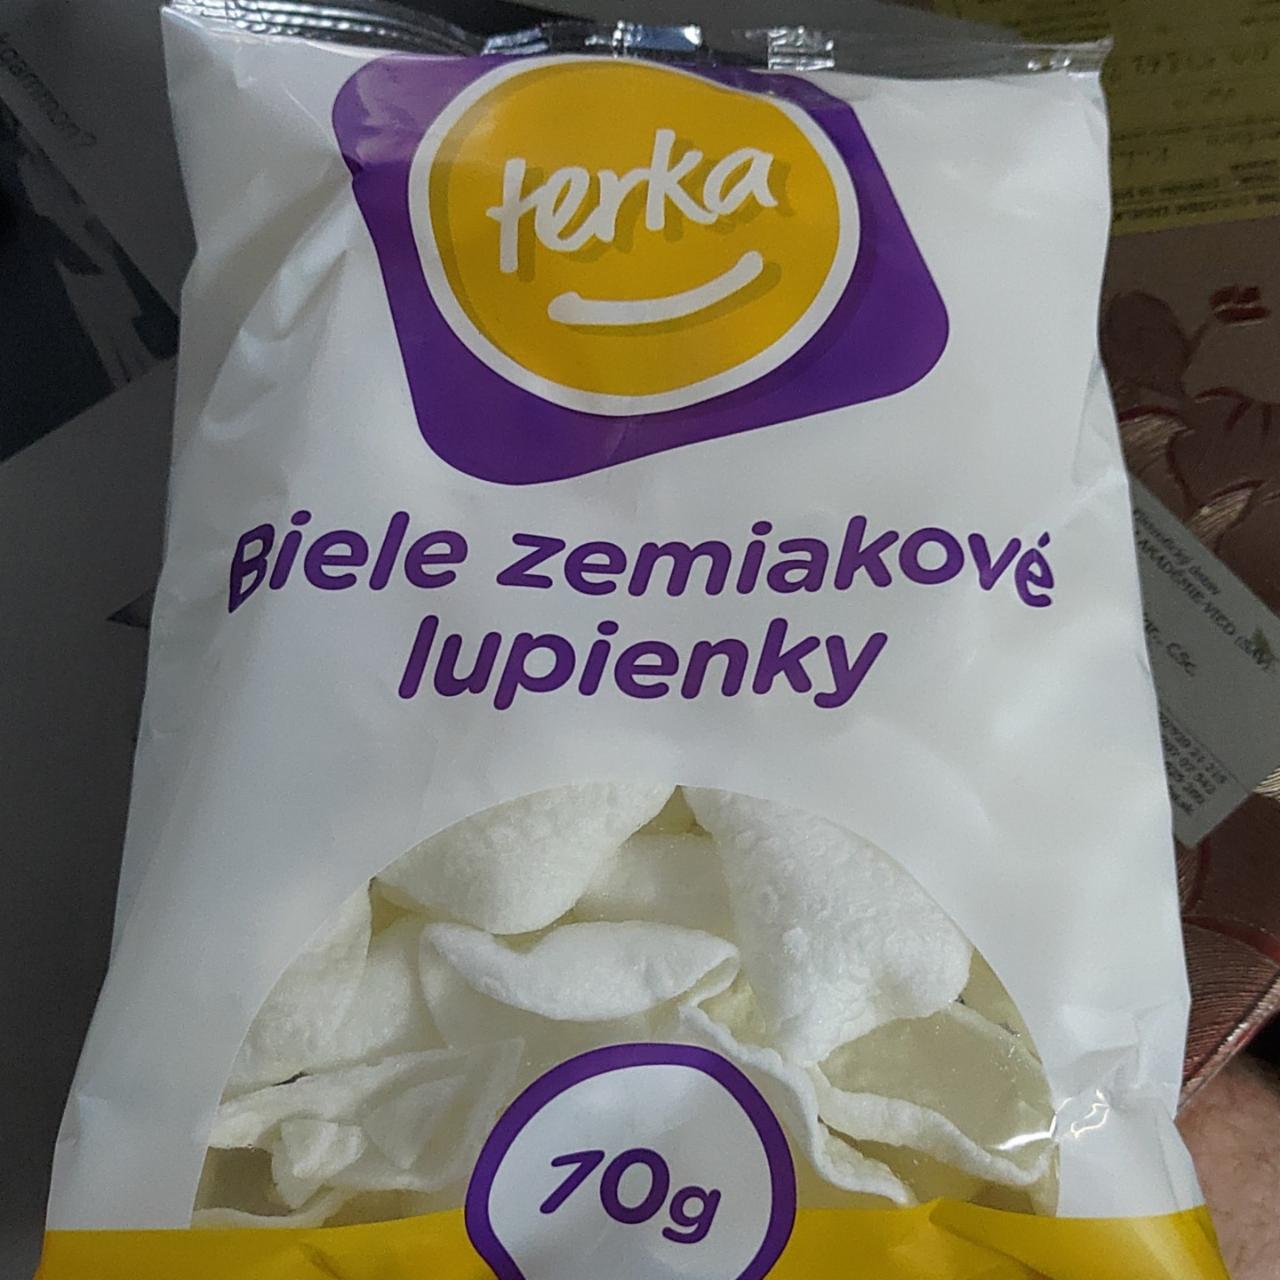 Fotografie - Biele zemiakové lupienky Terka